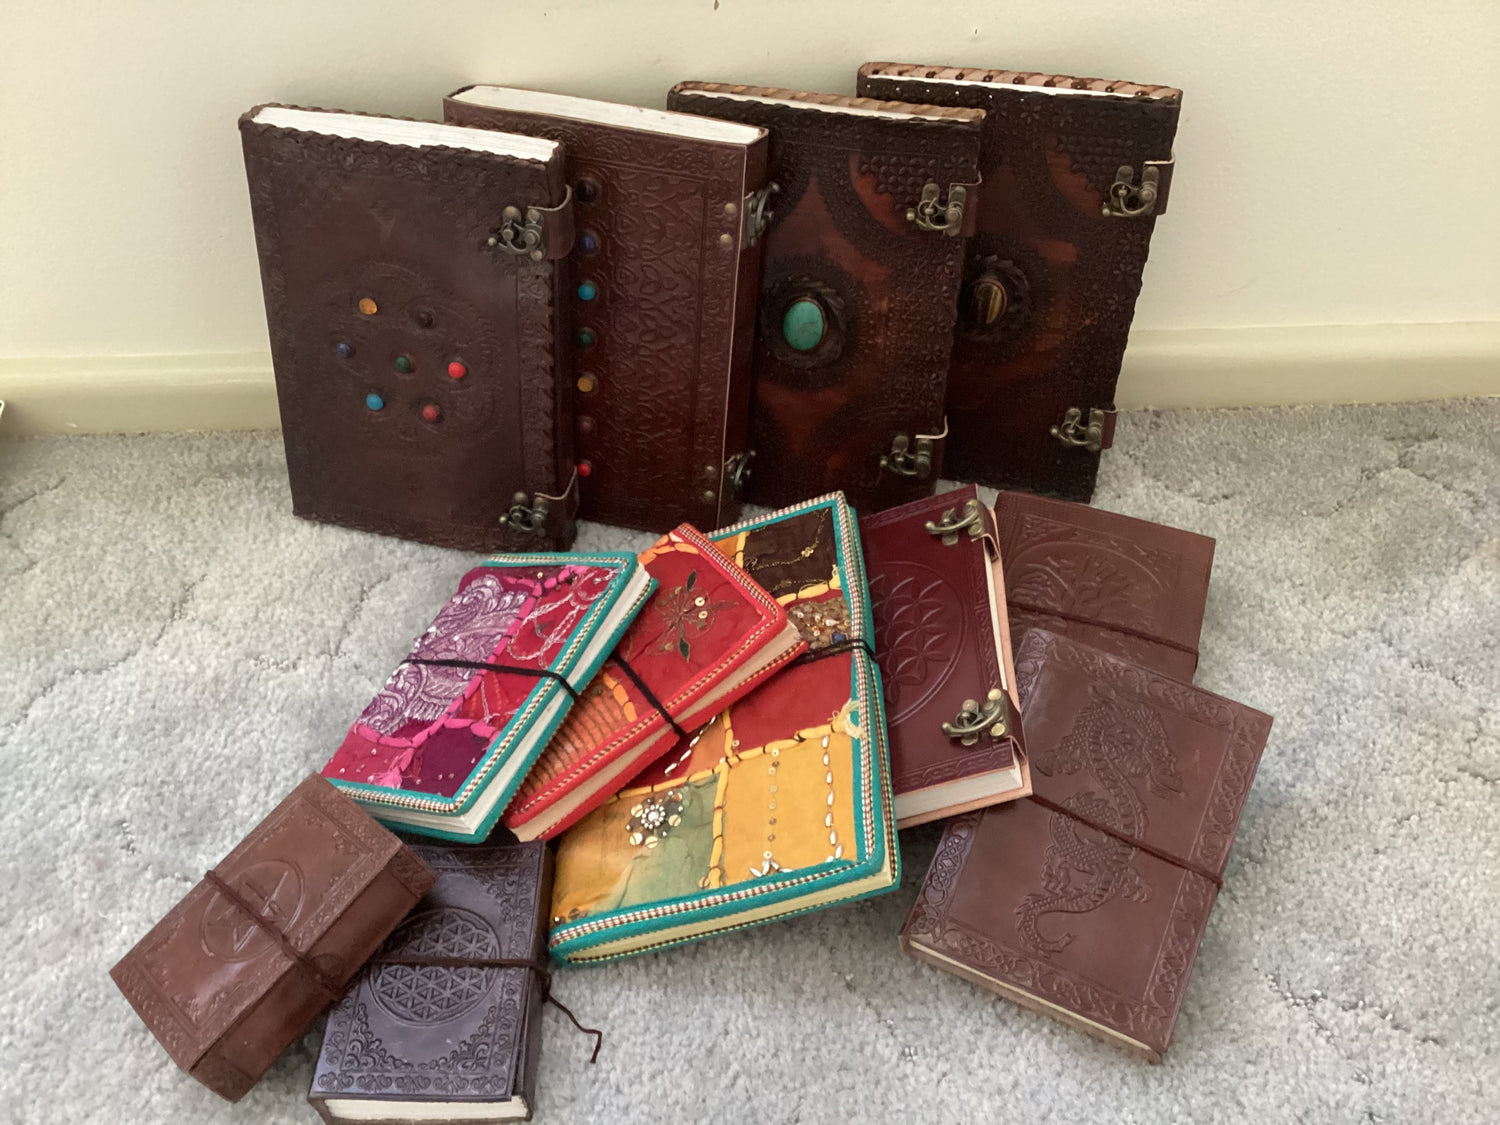 Books & Handmade Journals